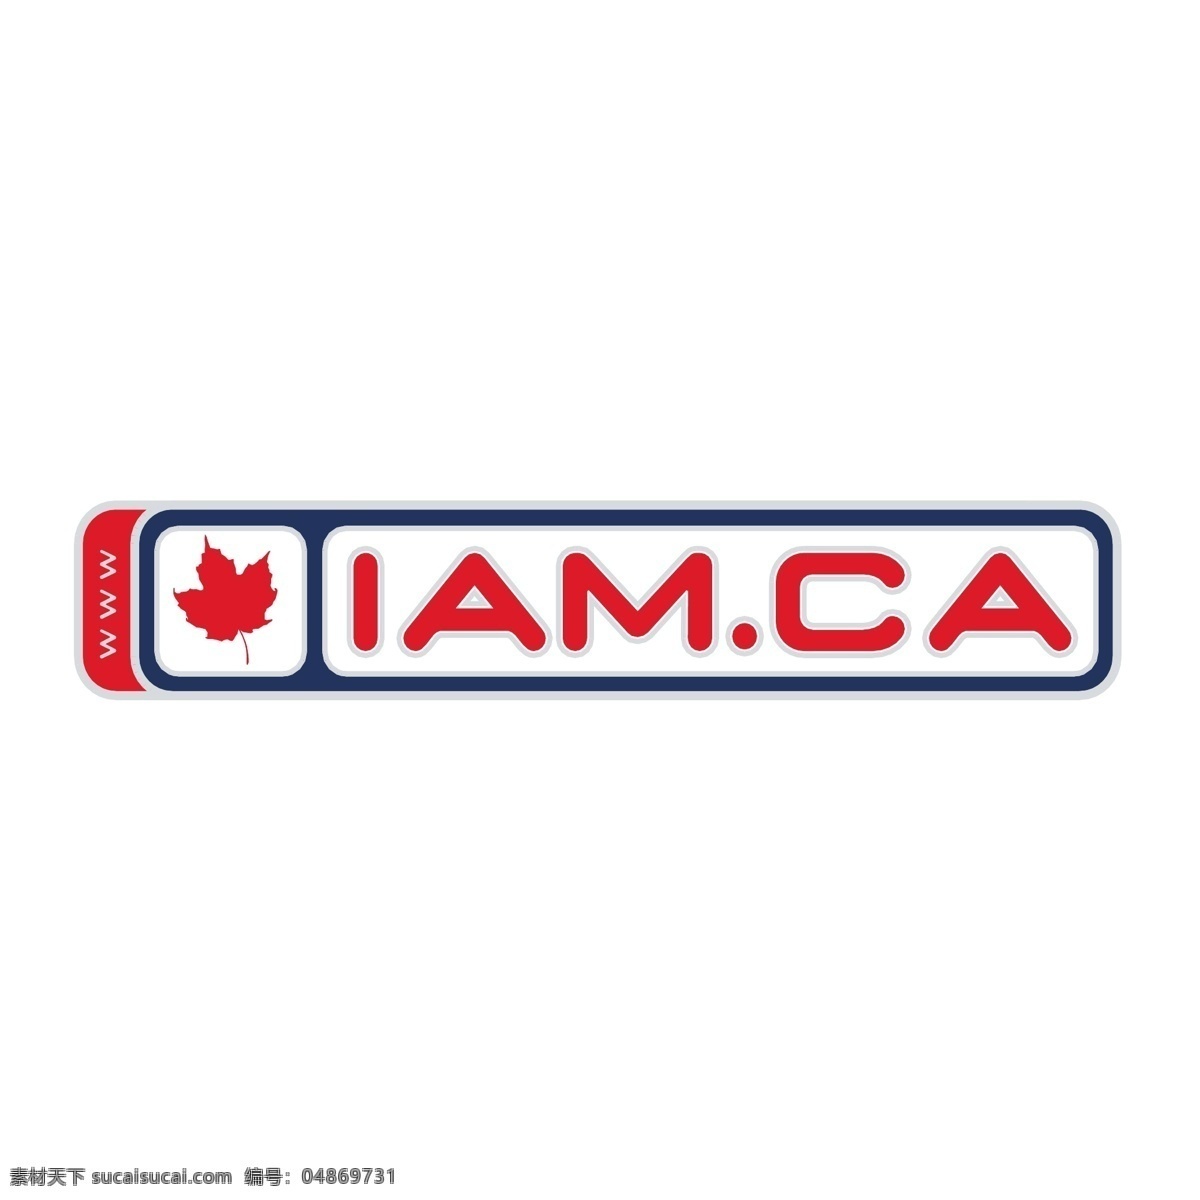 加拿大人 自由 加拿大 标志 psd源文件 logo设计